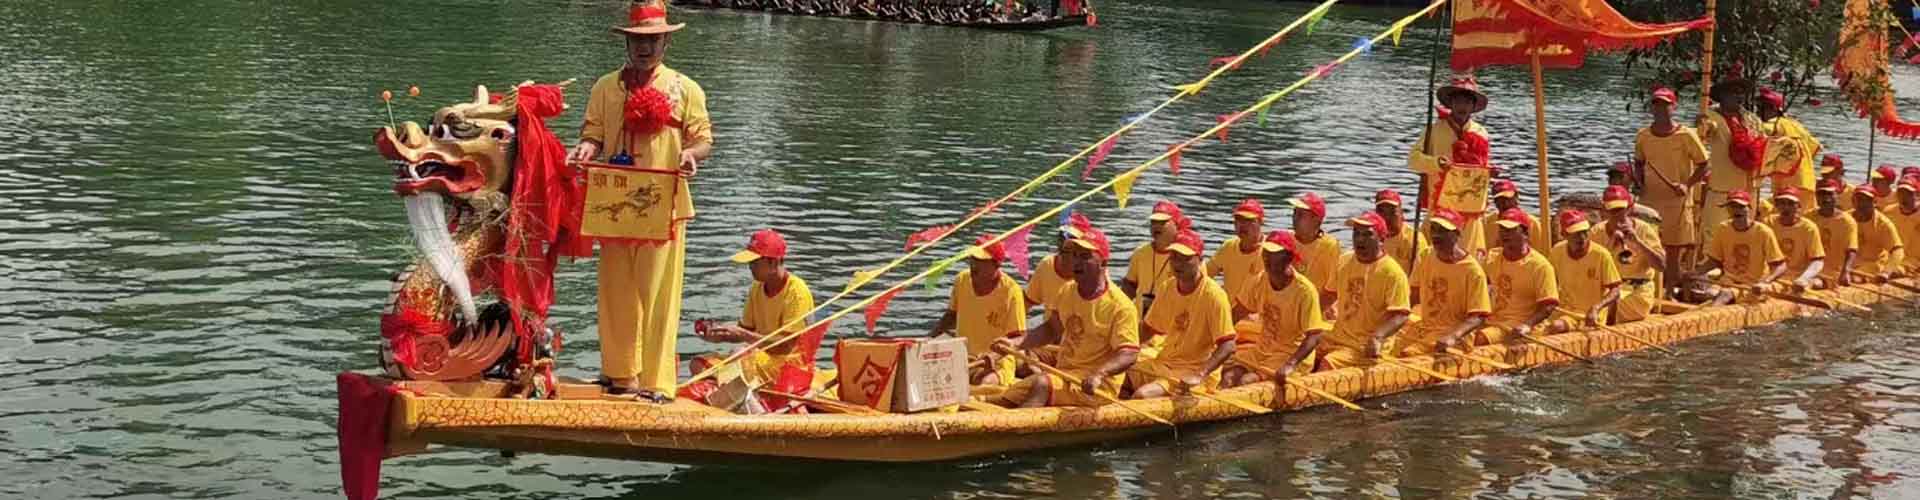 Festival des bateaux-dragons et courses pendant le fesival